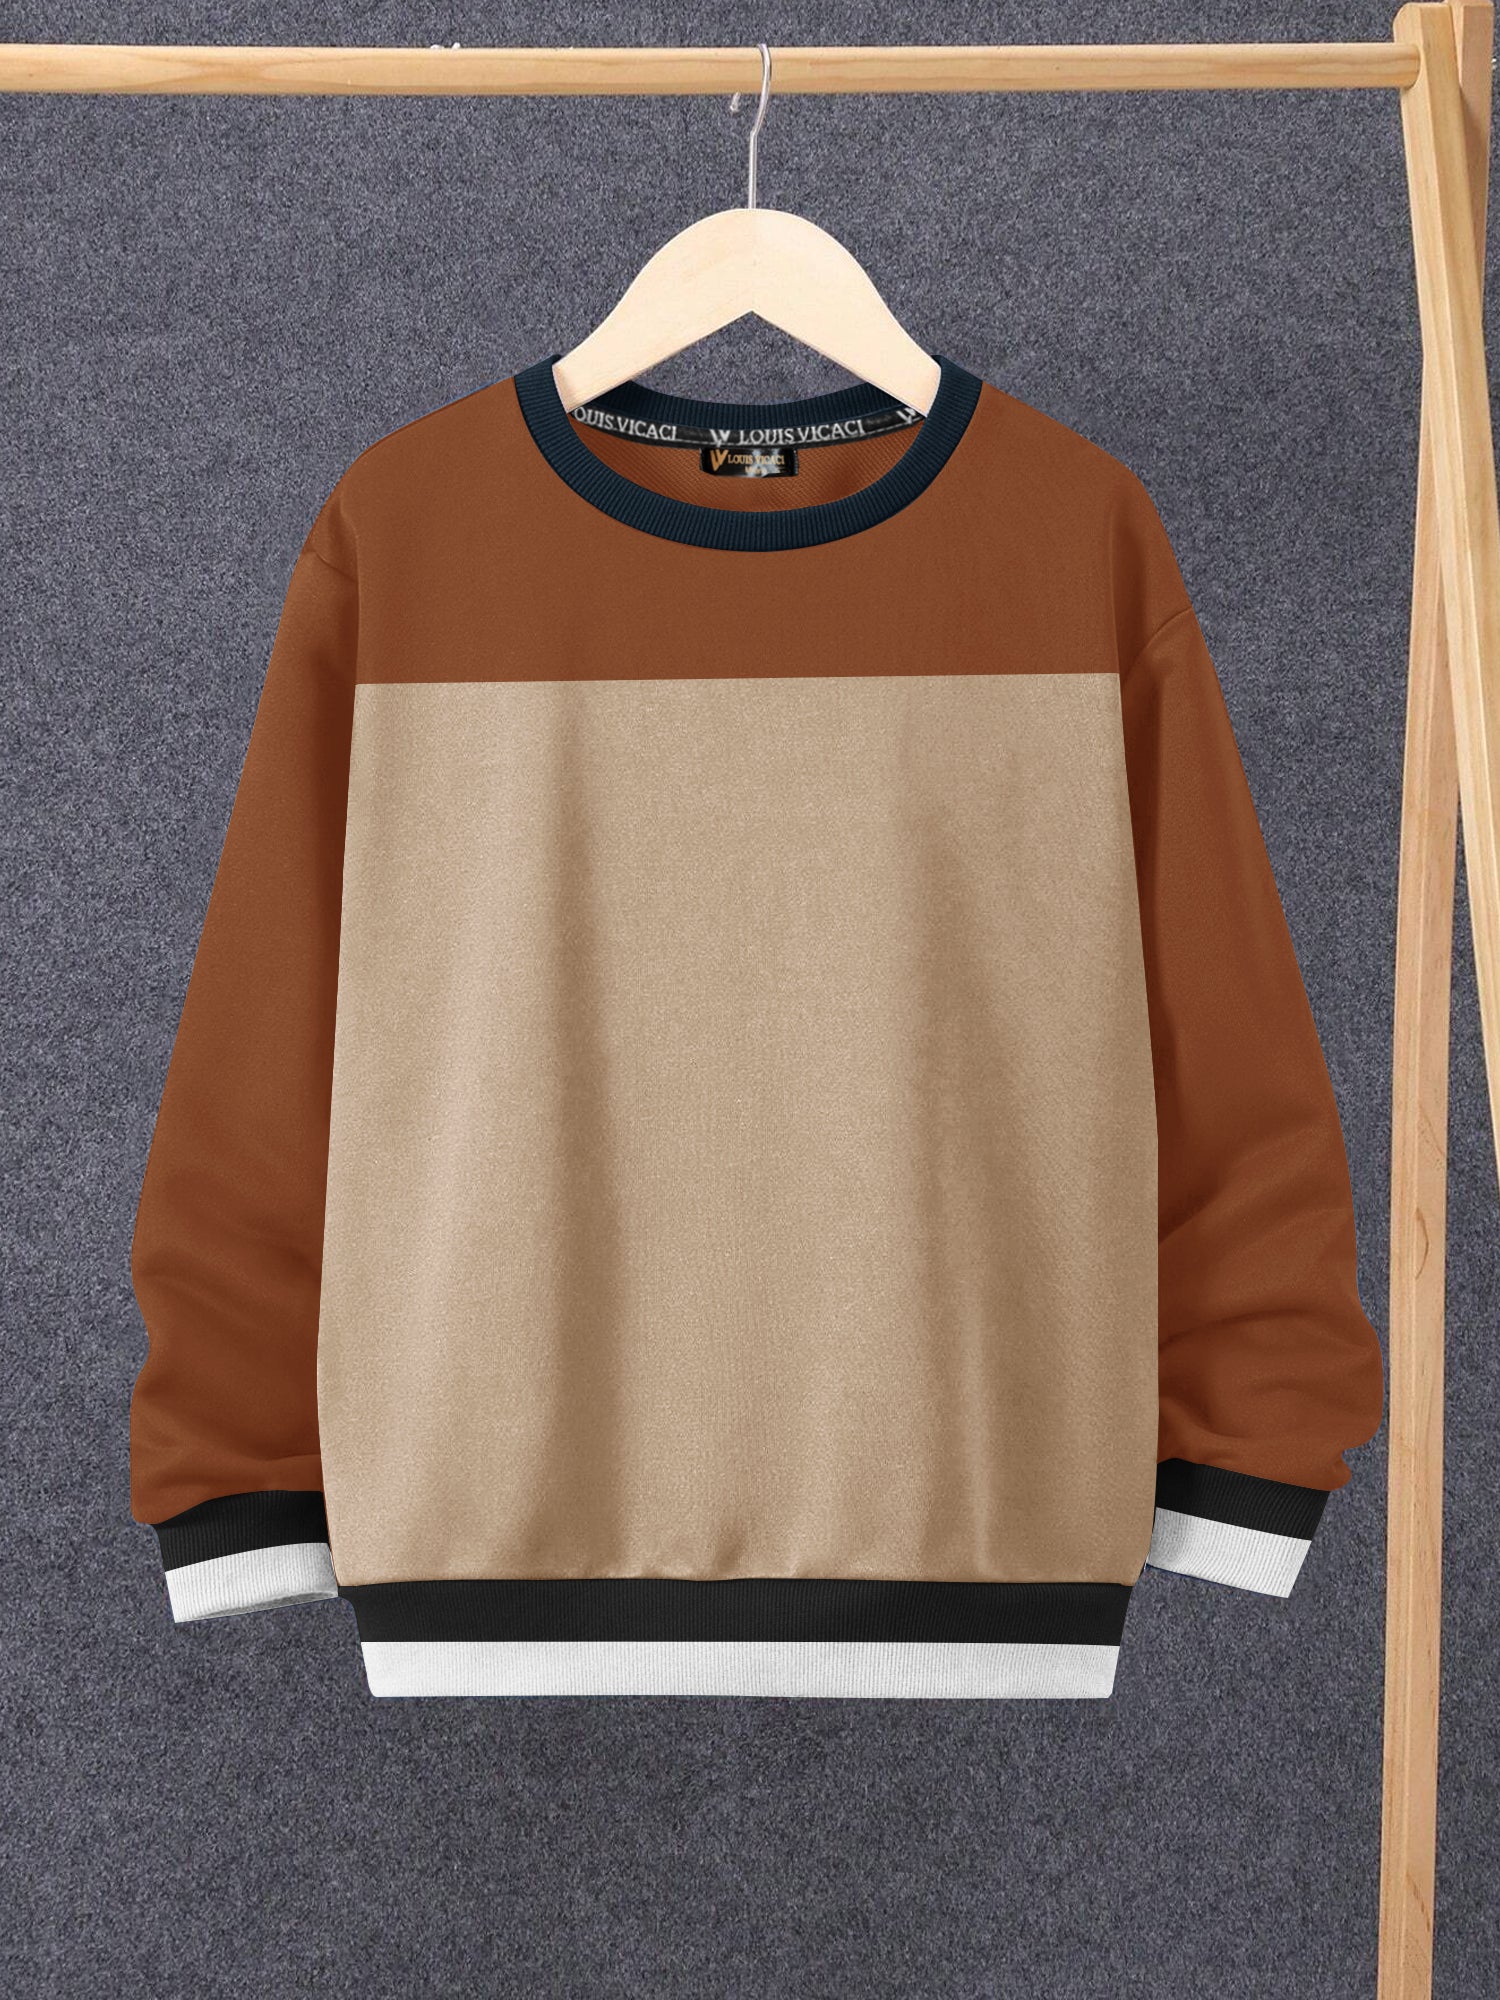 Louis Vicaci Fleece Sweatshirt For Kids-Camel & Brown-SP1486/RT2346